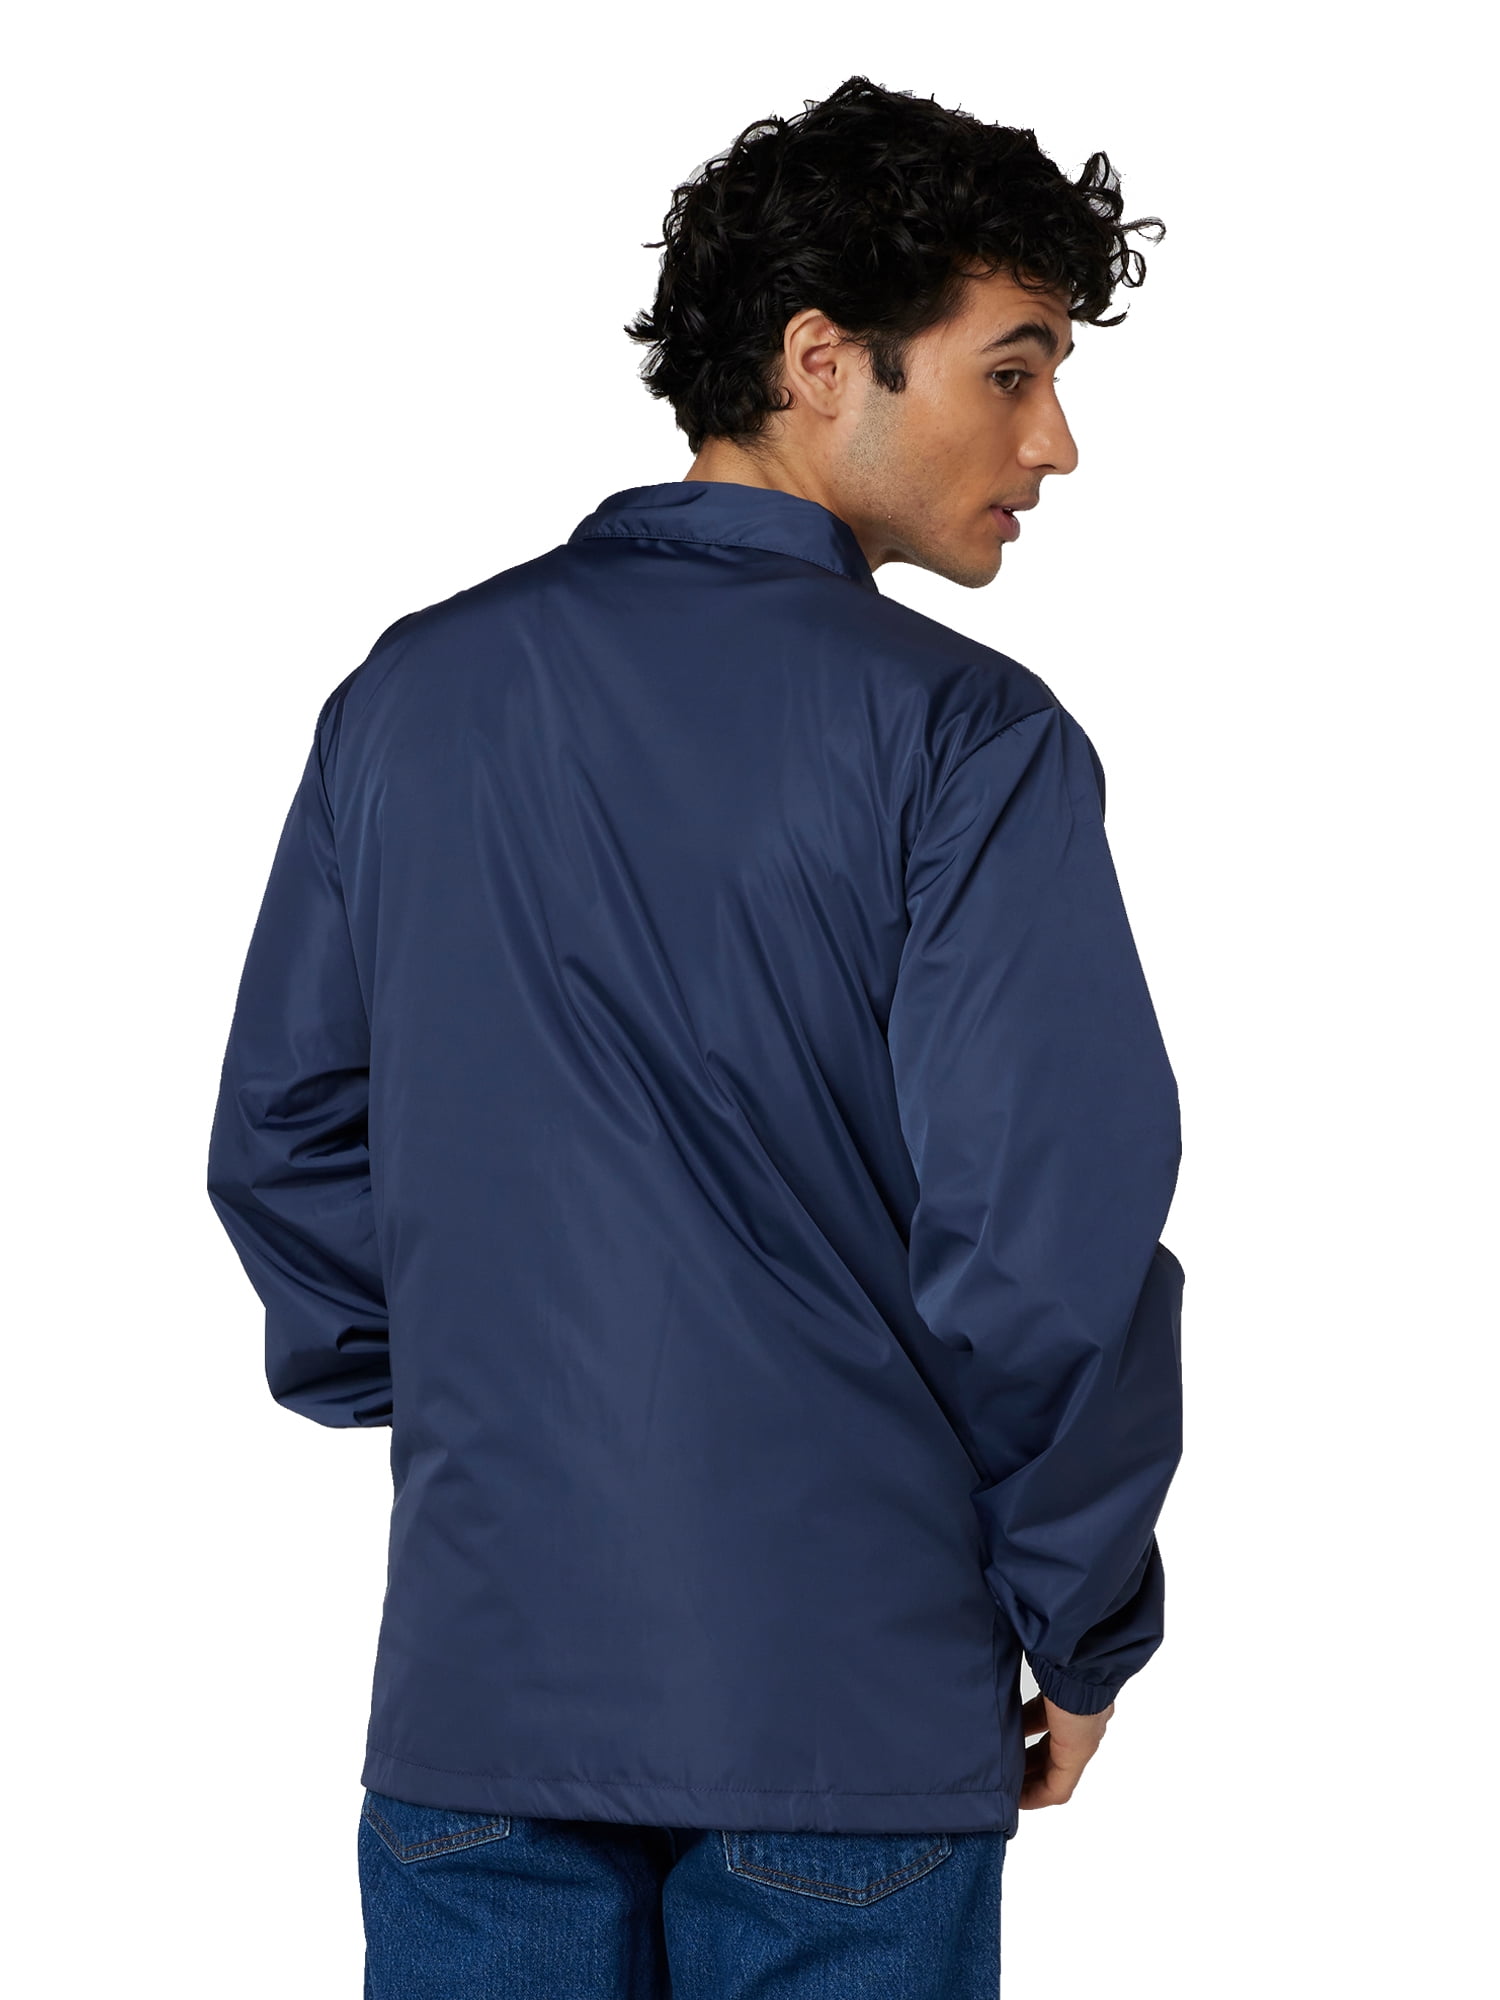 Men’s coach jacket – Stylish and Elegant Men’s Jacket插图4